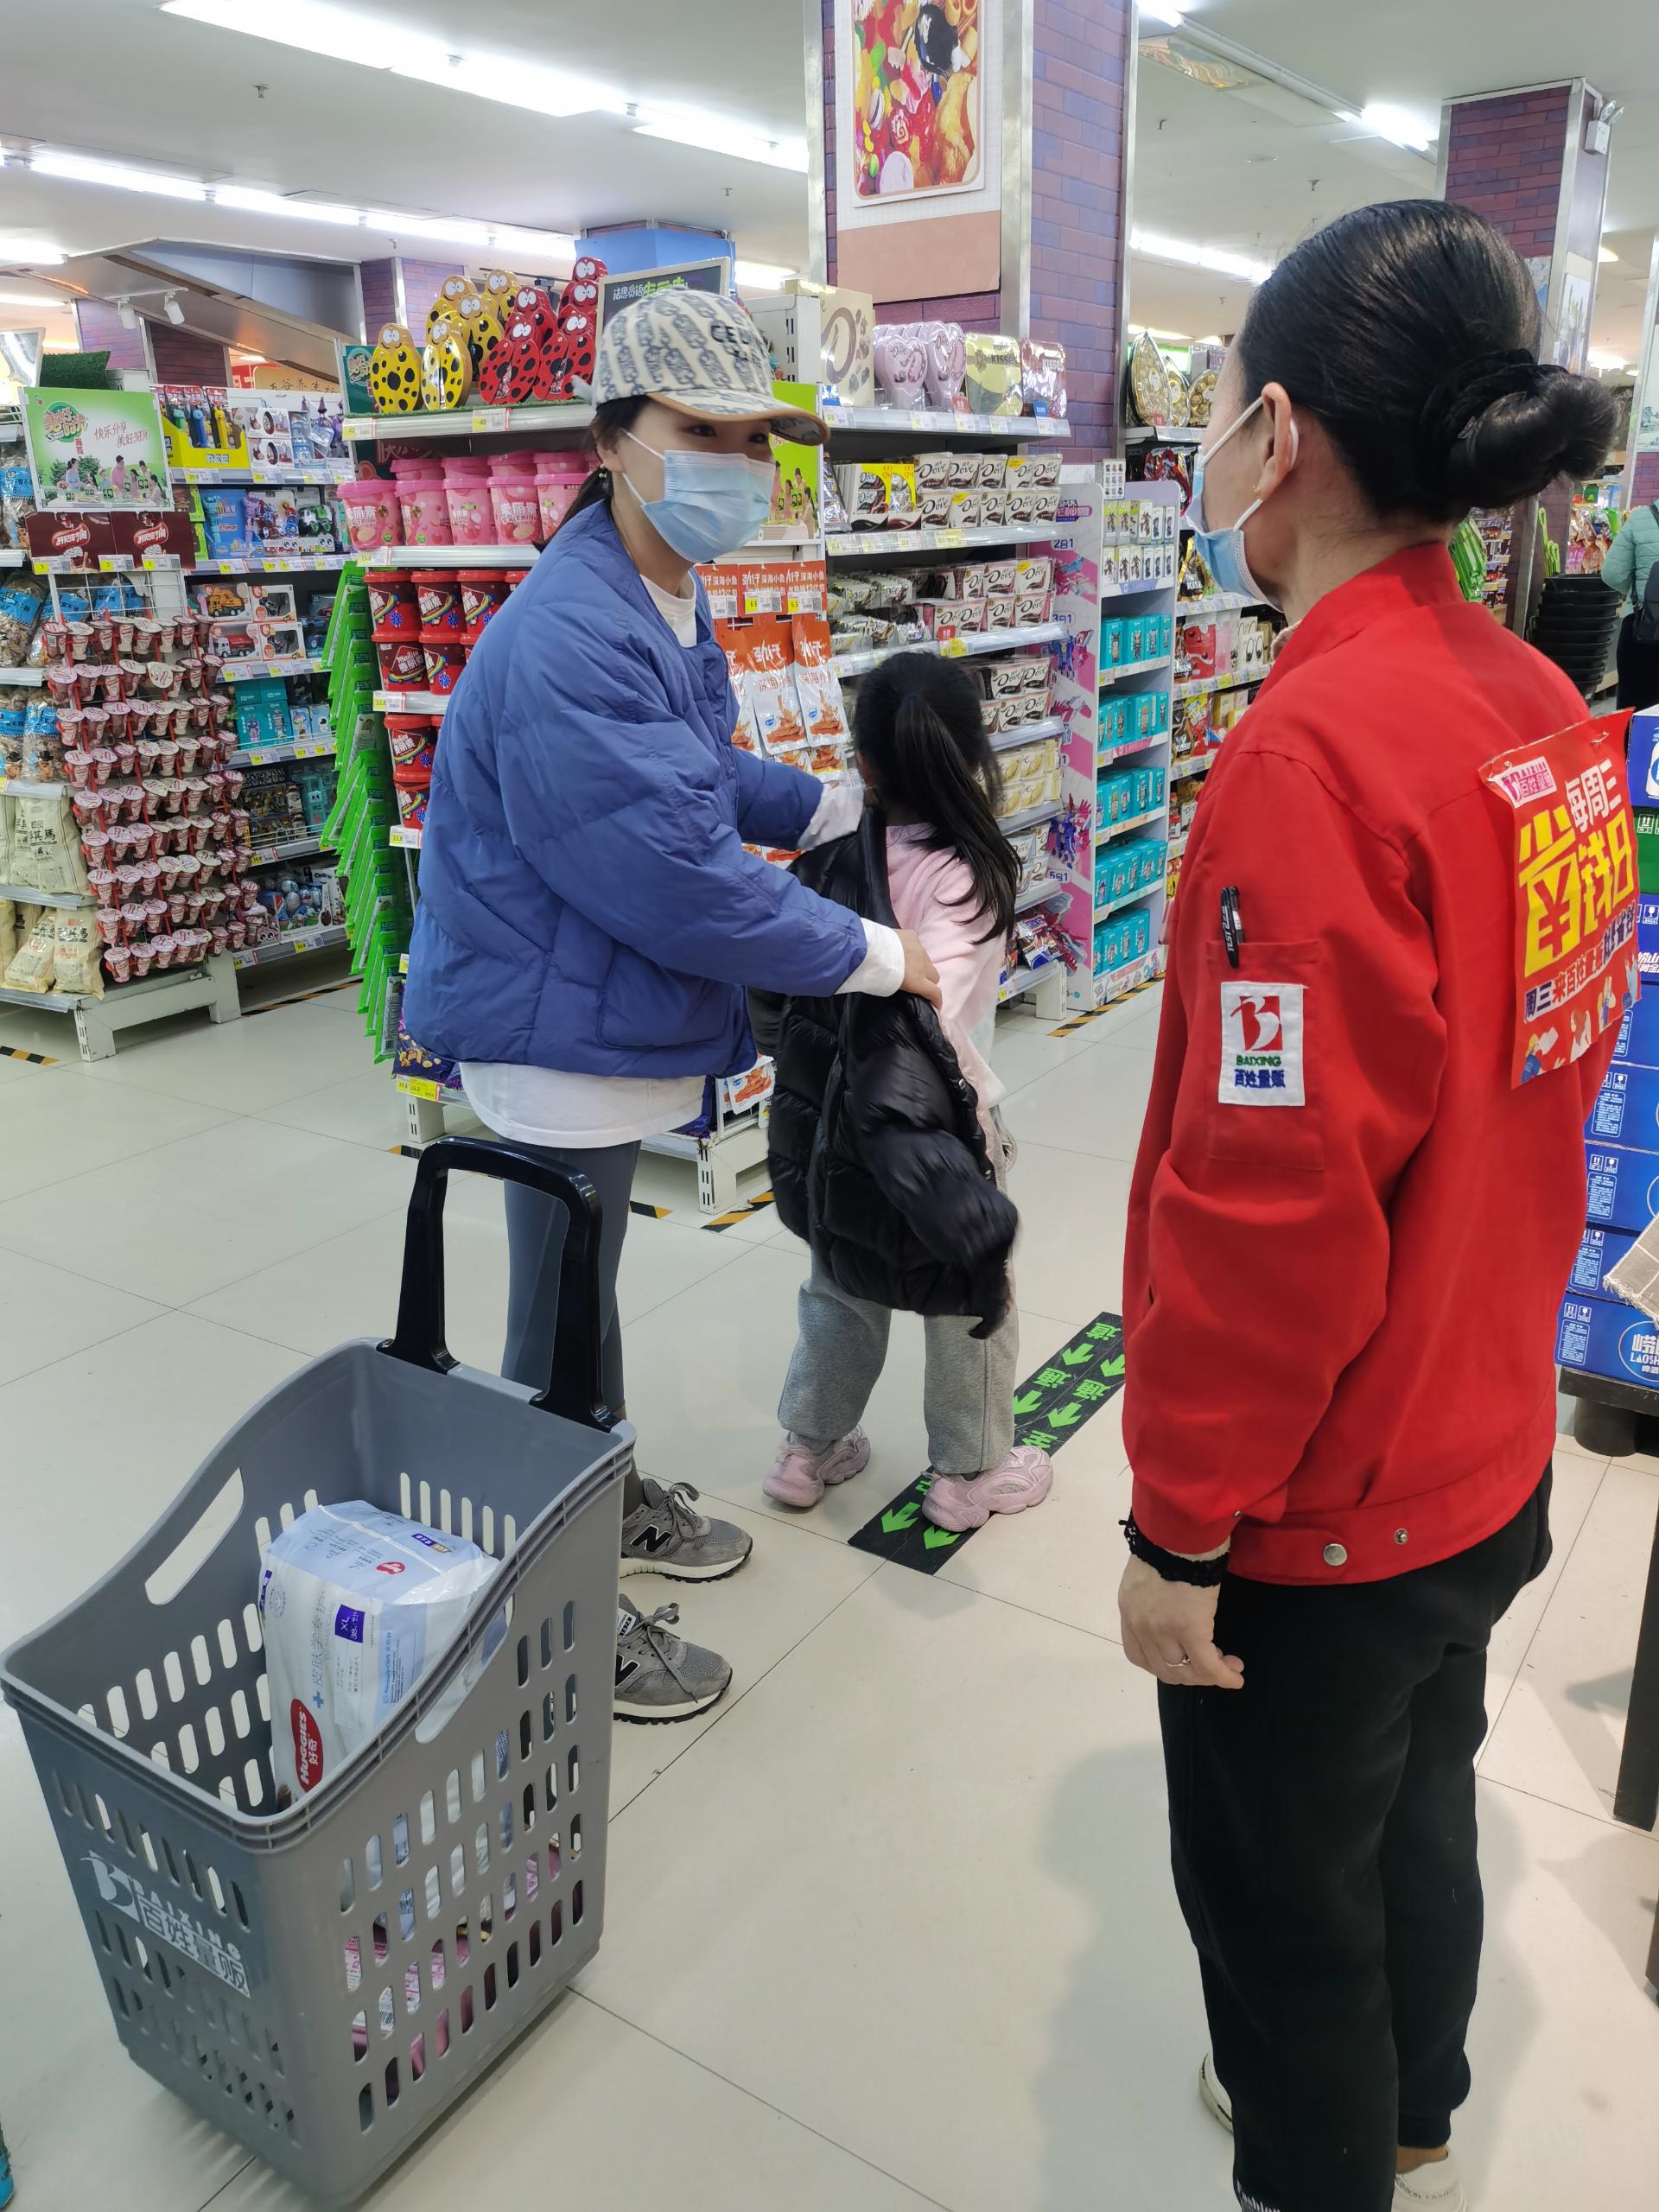 五一店王金凤帮助孩子找妈妈  赢得顾客赞扬